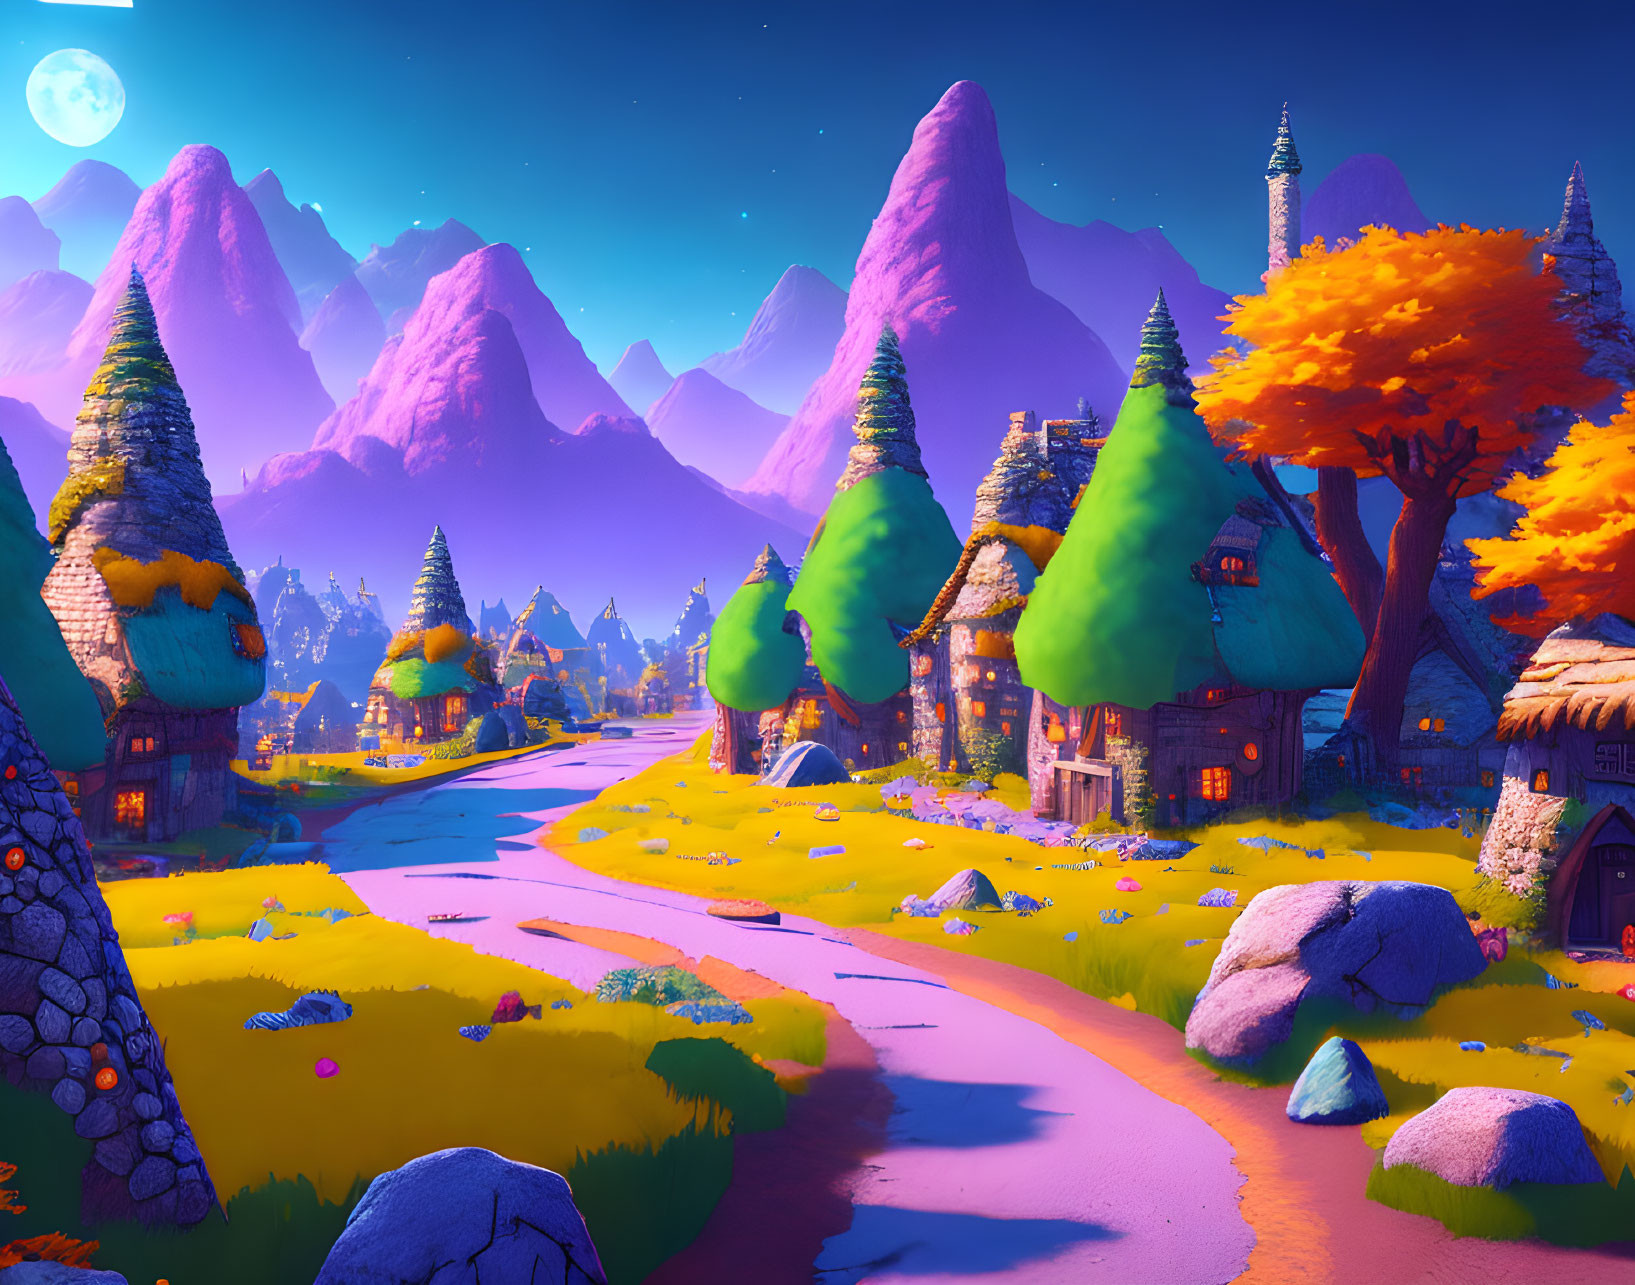 Fantasy village near the mountains